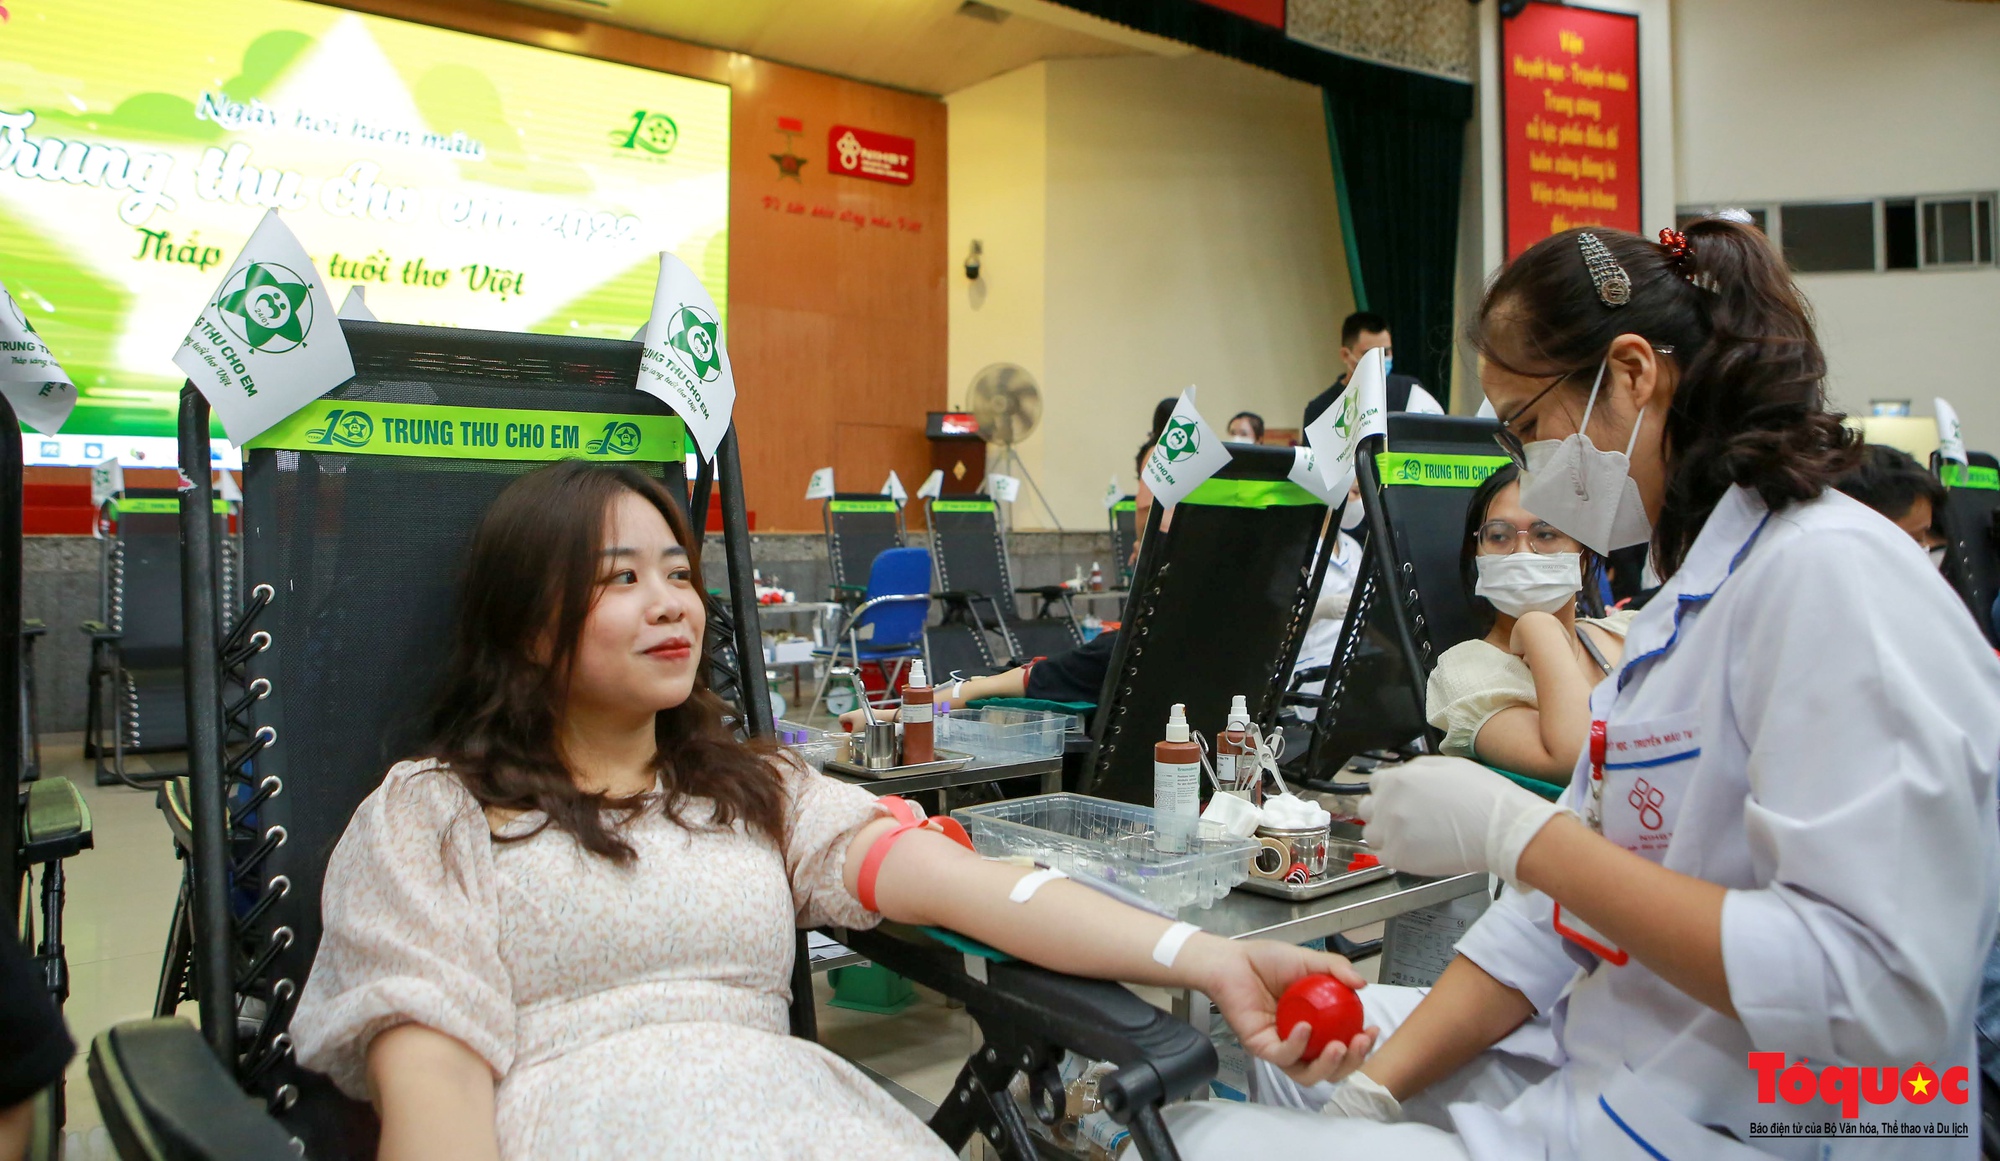 Hà Nội: Người dân thủ đô xếp hàng dài tham gia hiến máu &quot;Trung thu cho em&quot; - Ảnh 11.